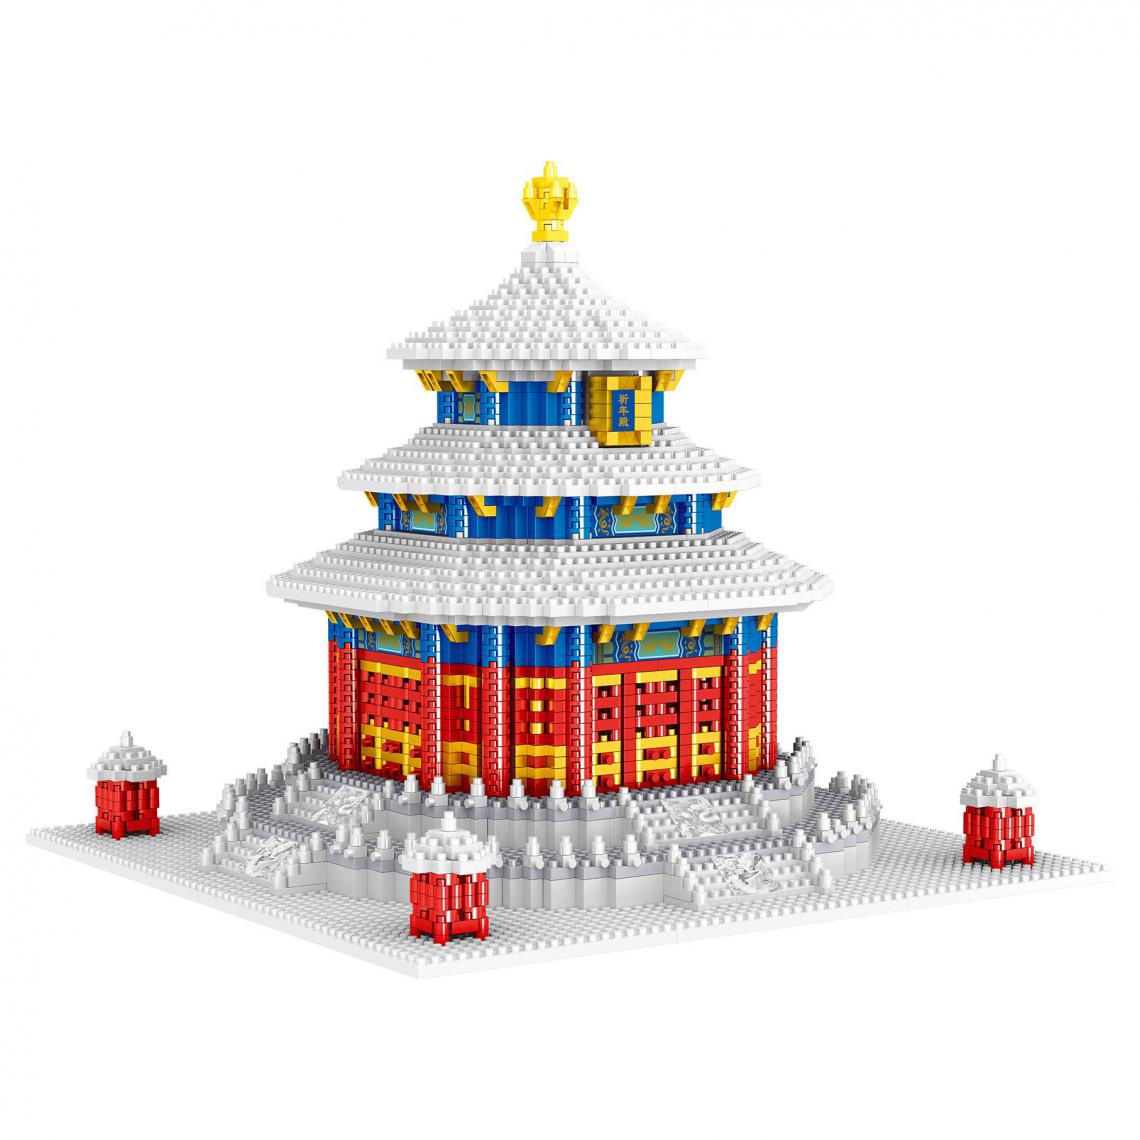 Generic - Jouet de construction Architecture urbaine Lezi Temple du ciel de Pékin ,24 cm * 24 *21.2 cm - Blanc / Rouge  - Briques et blocs